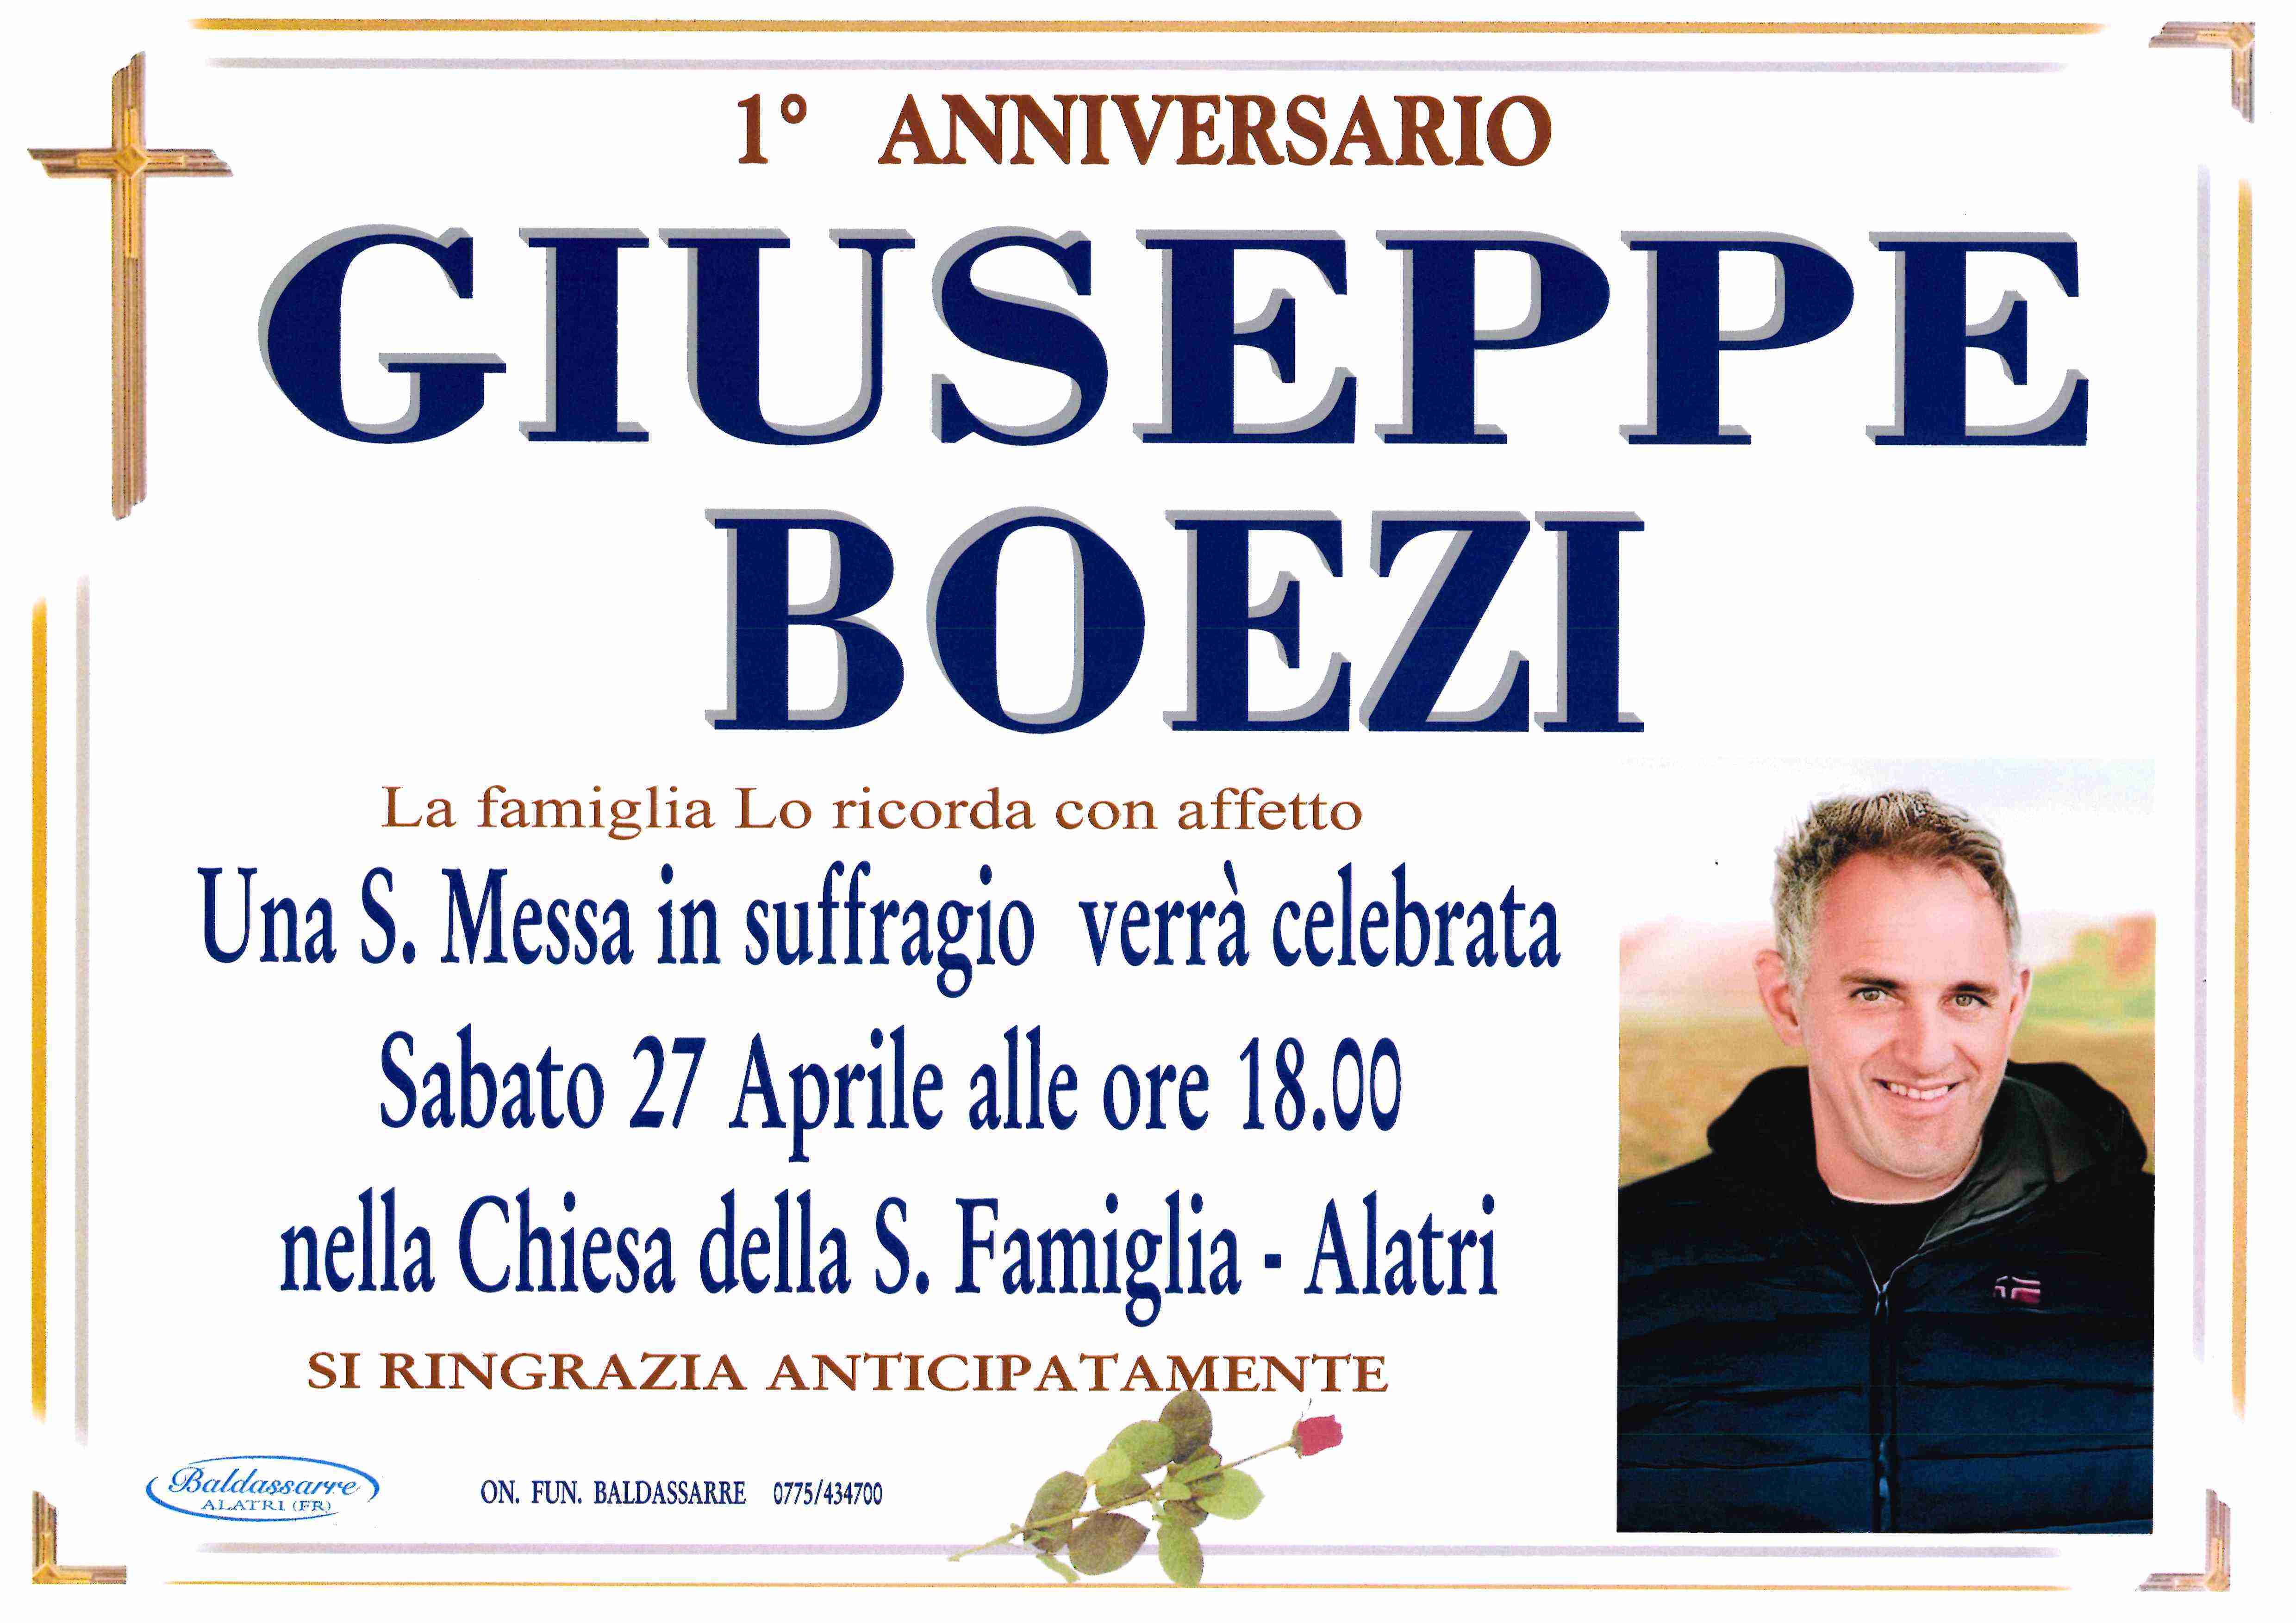 Giuseppe Boezi